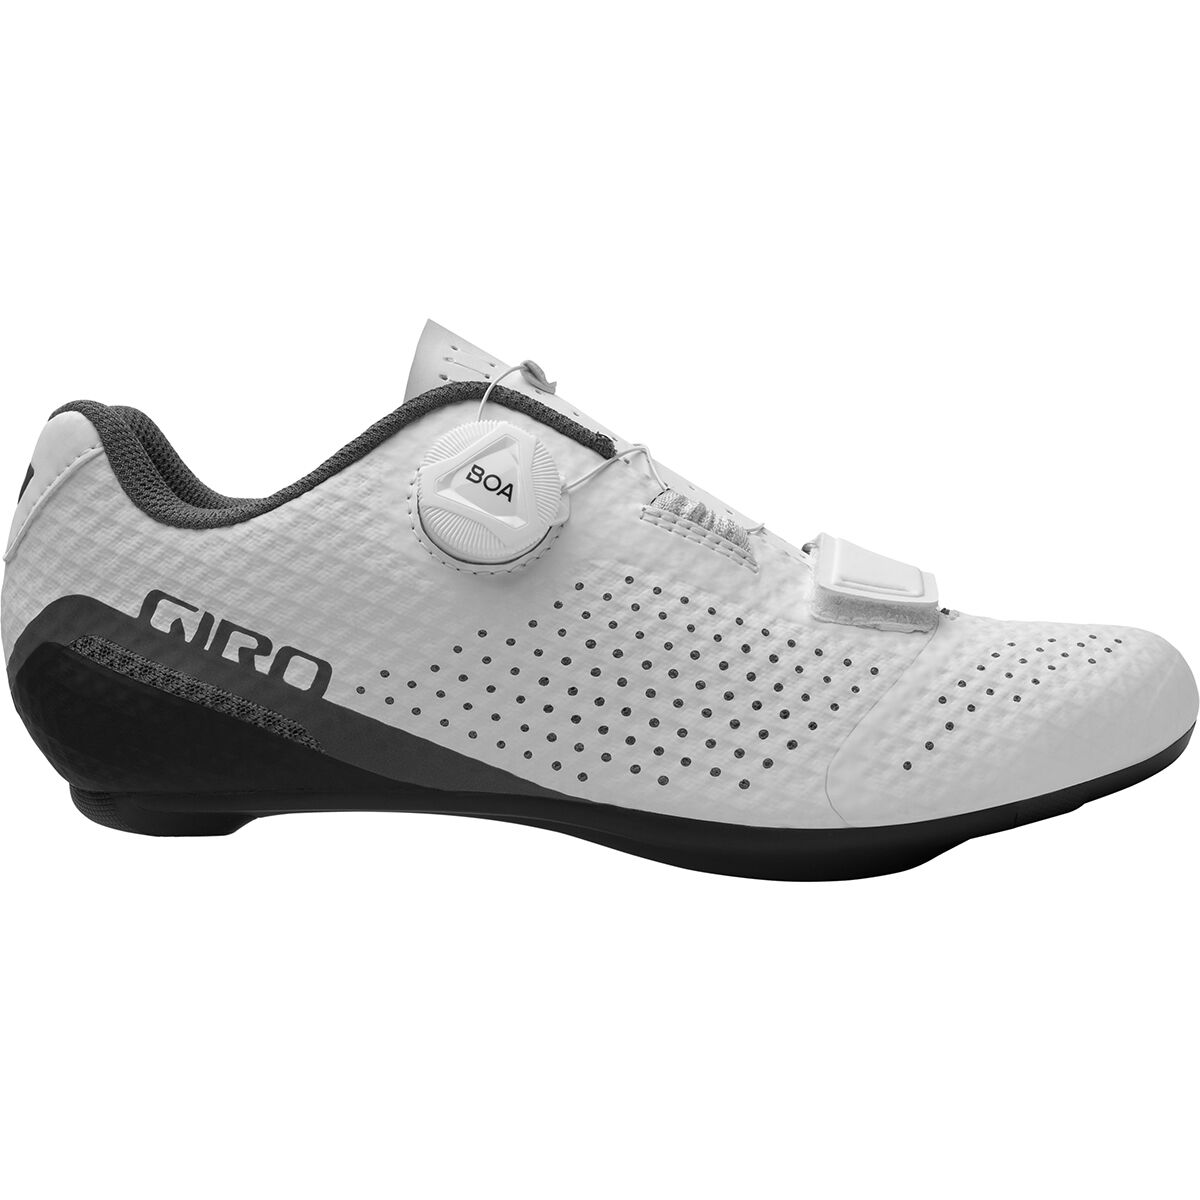 Giro Cadet Cycling Shoe - Women's White, 40.0